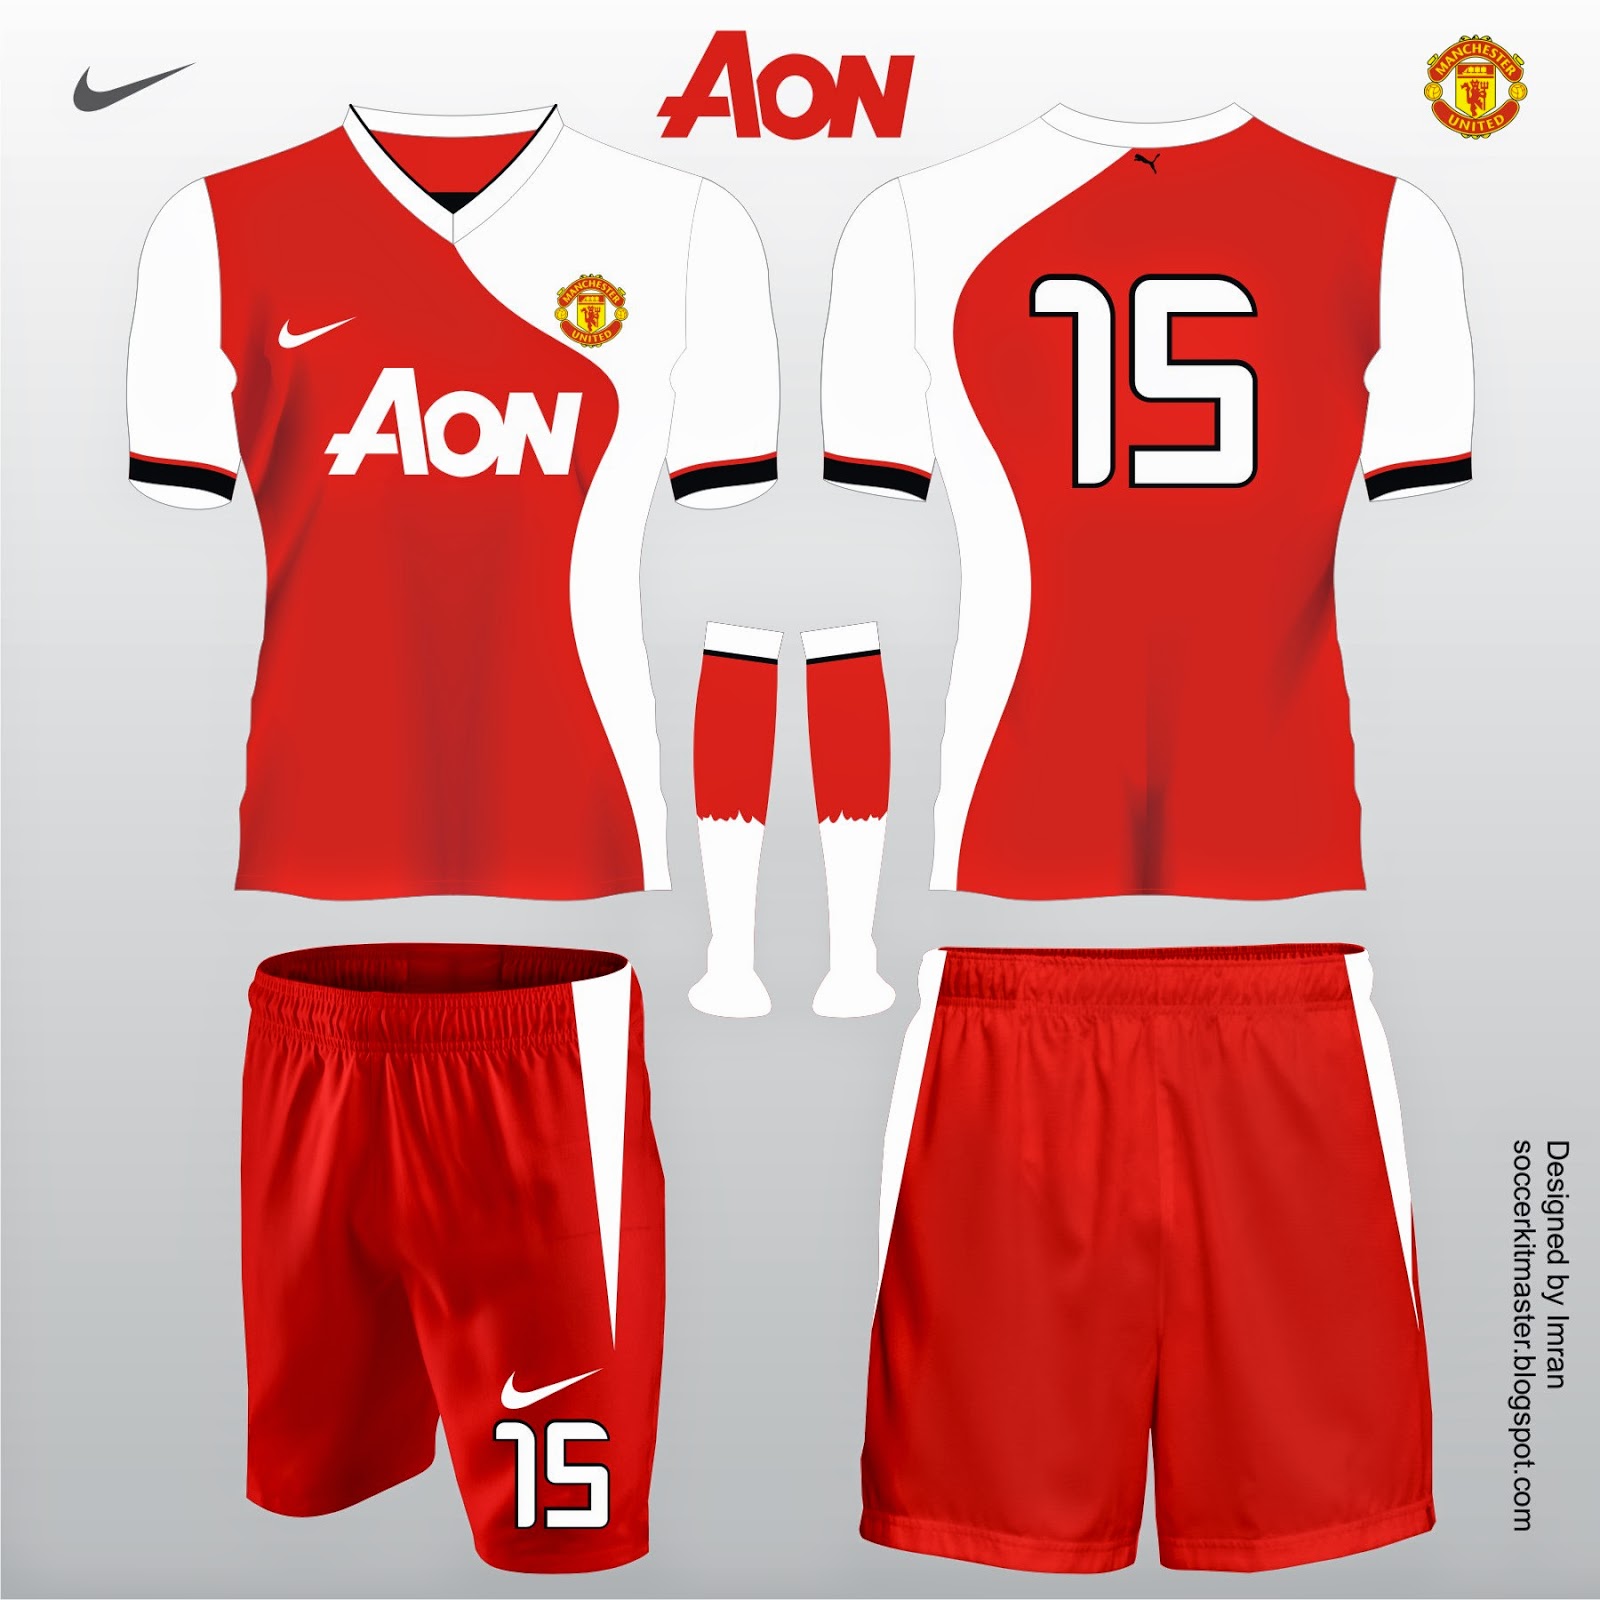 Football Kit Design Master: Manchester United Football Kit Designs